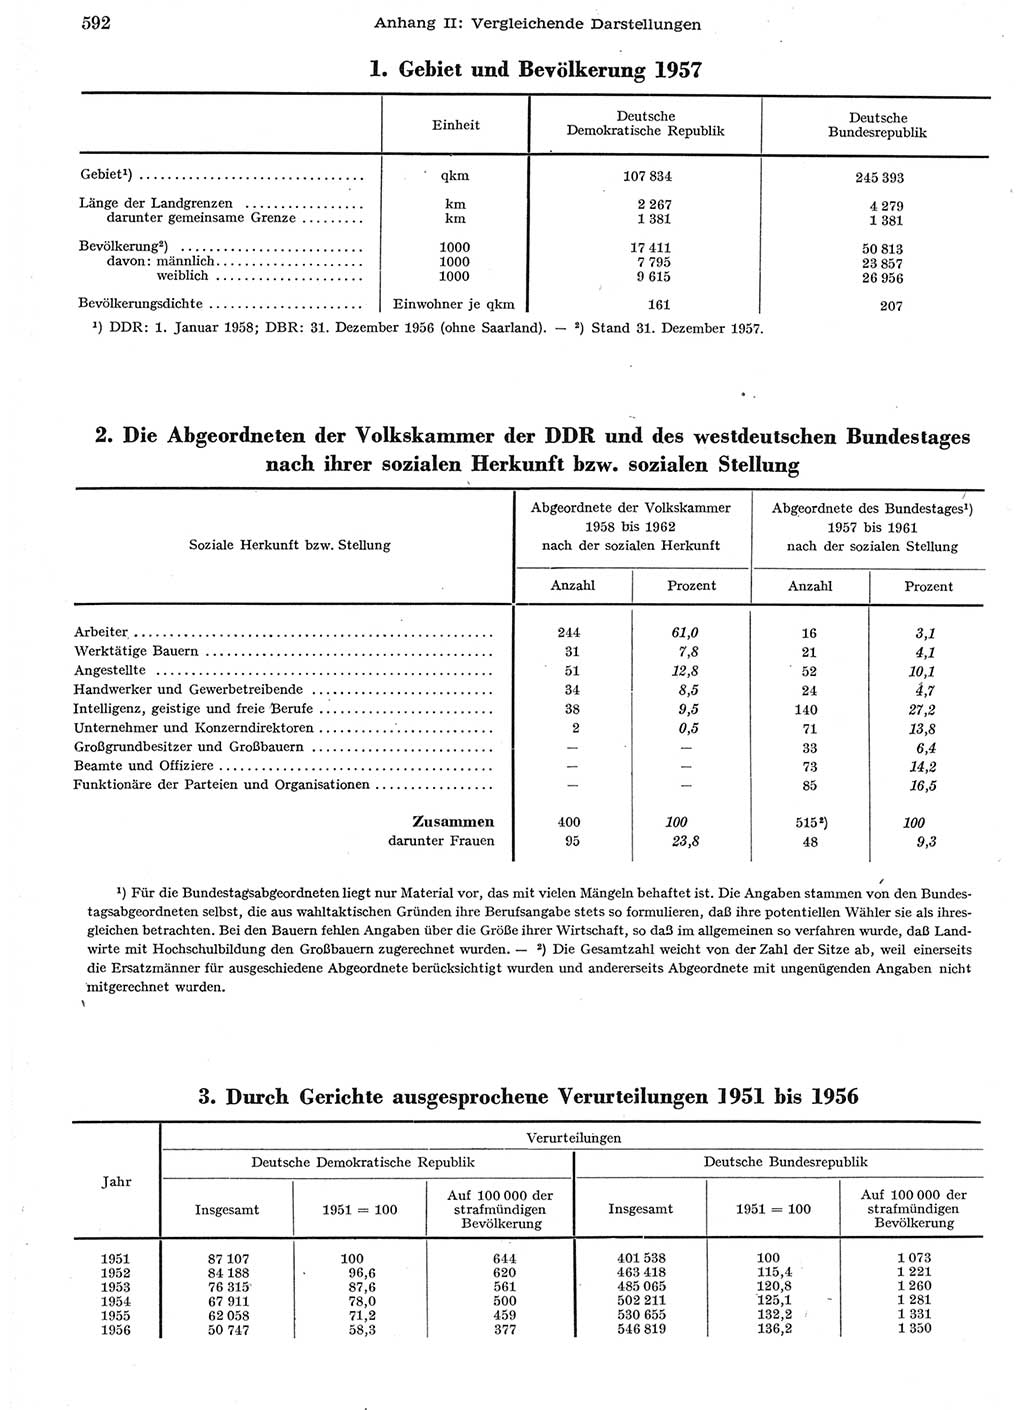 Statistisches Jahrbuch der Deutschen Demokratischen Republik (DDR) 1958, Seite 592 (Stat. Jb. DDR 1958, S. 592)